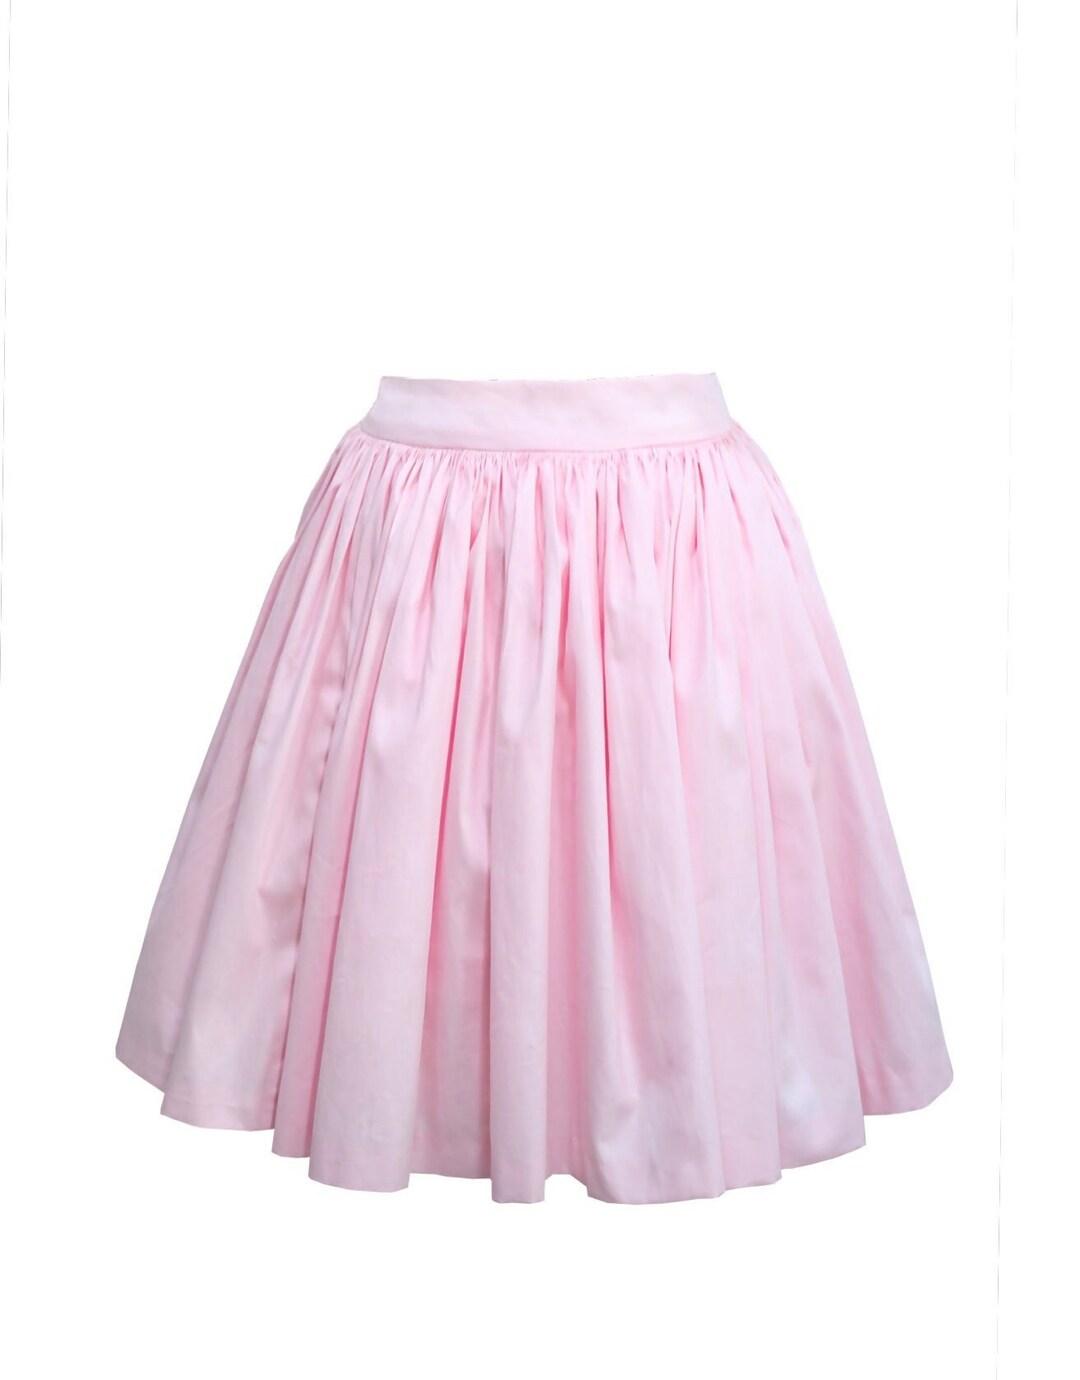 NEW Full Gathered Skirt Solid Light Pink Vintage Skirt - Etsy